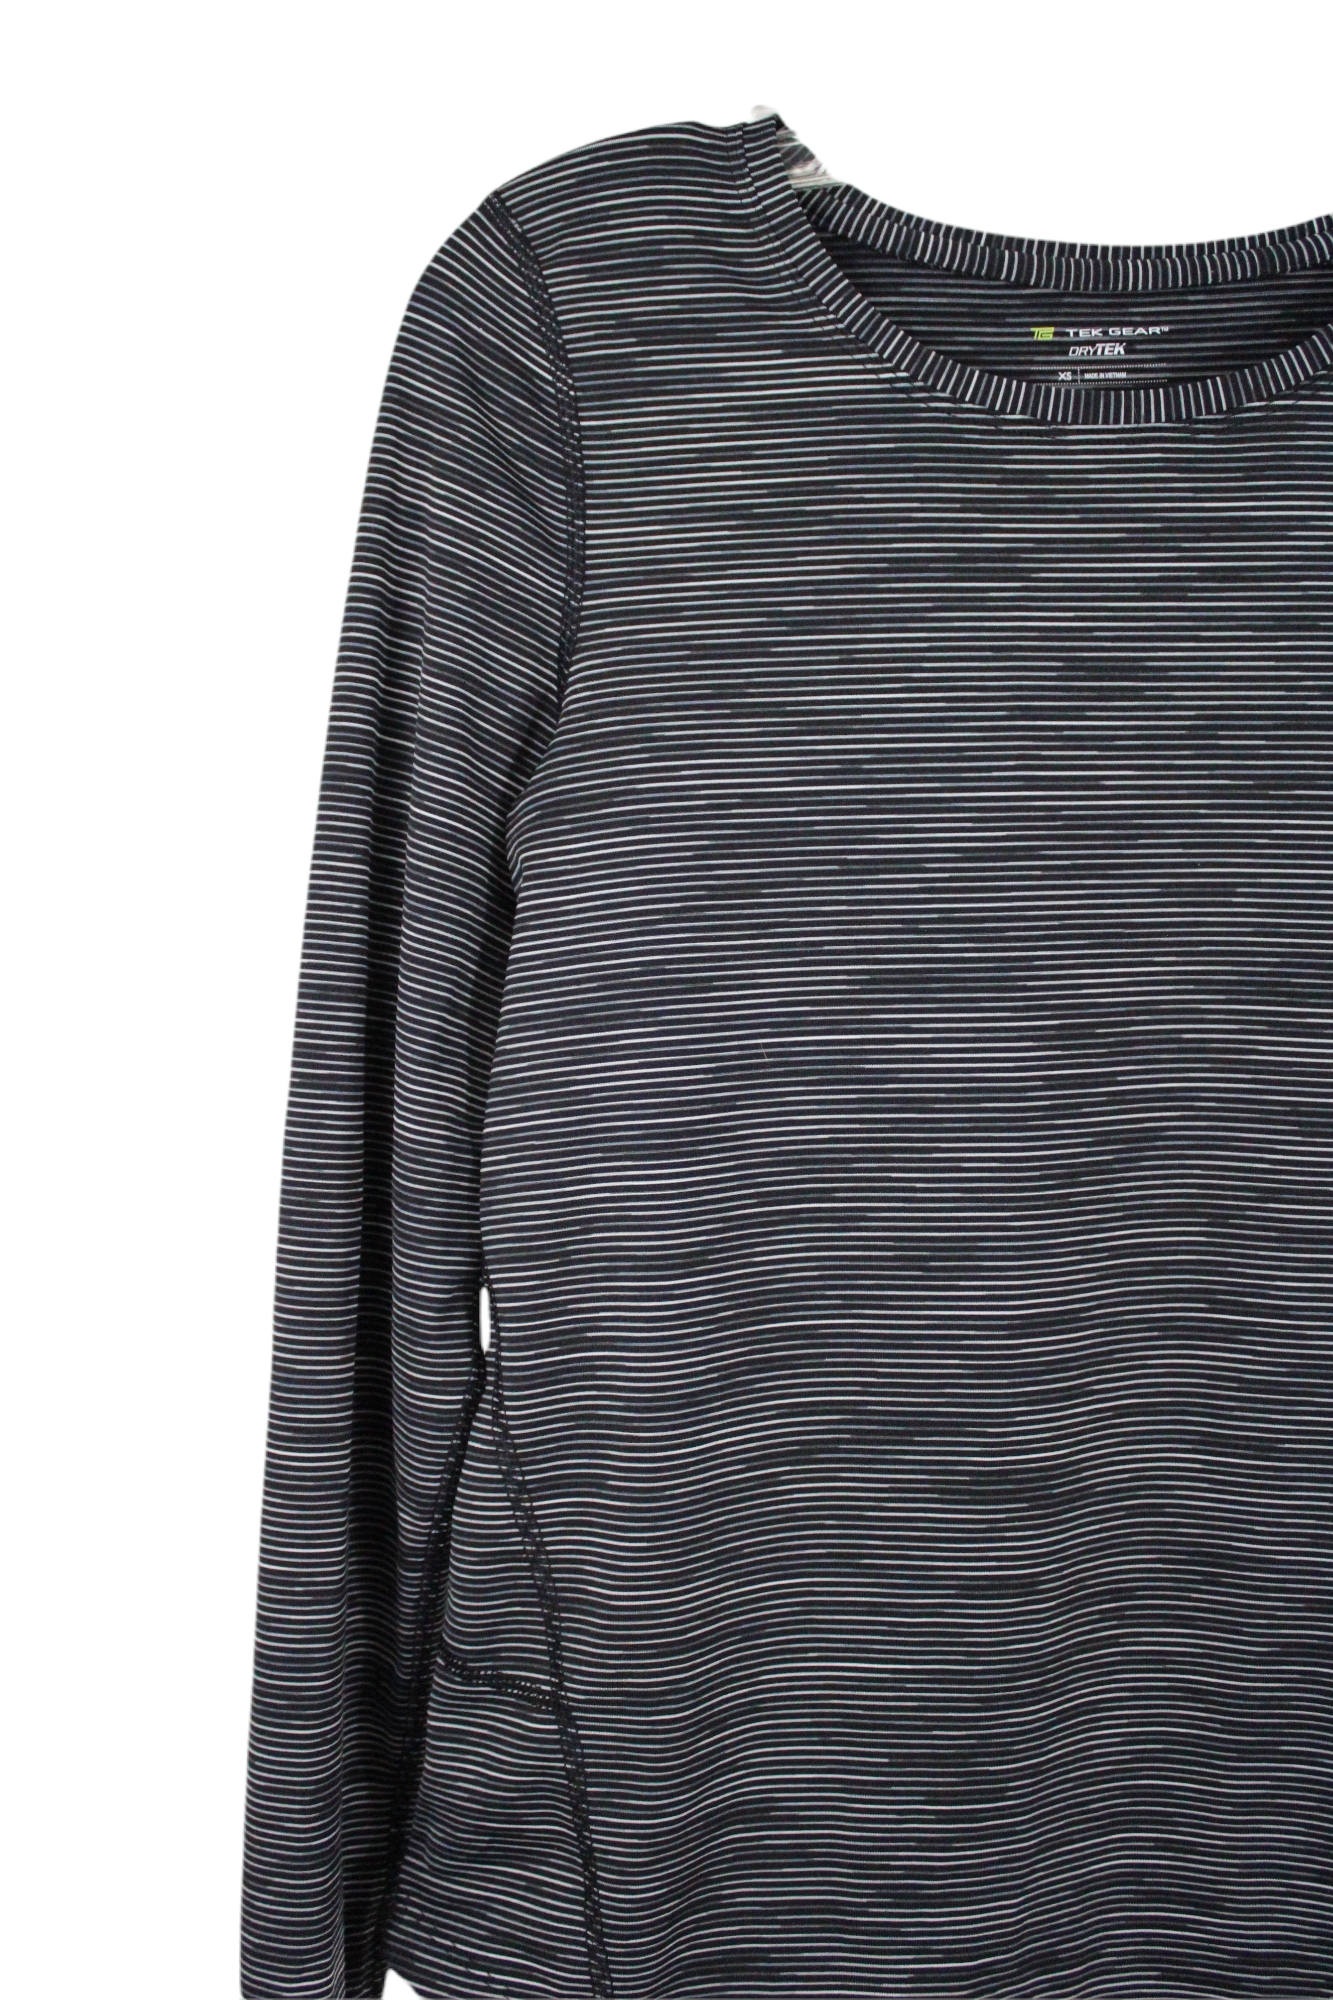 Tek Gear DryTek Black Striped Long sleeved Shirt